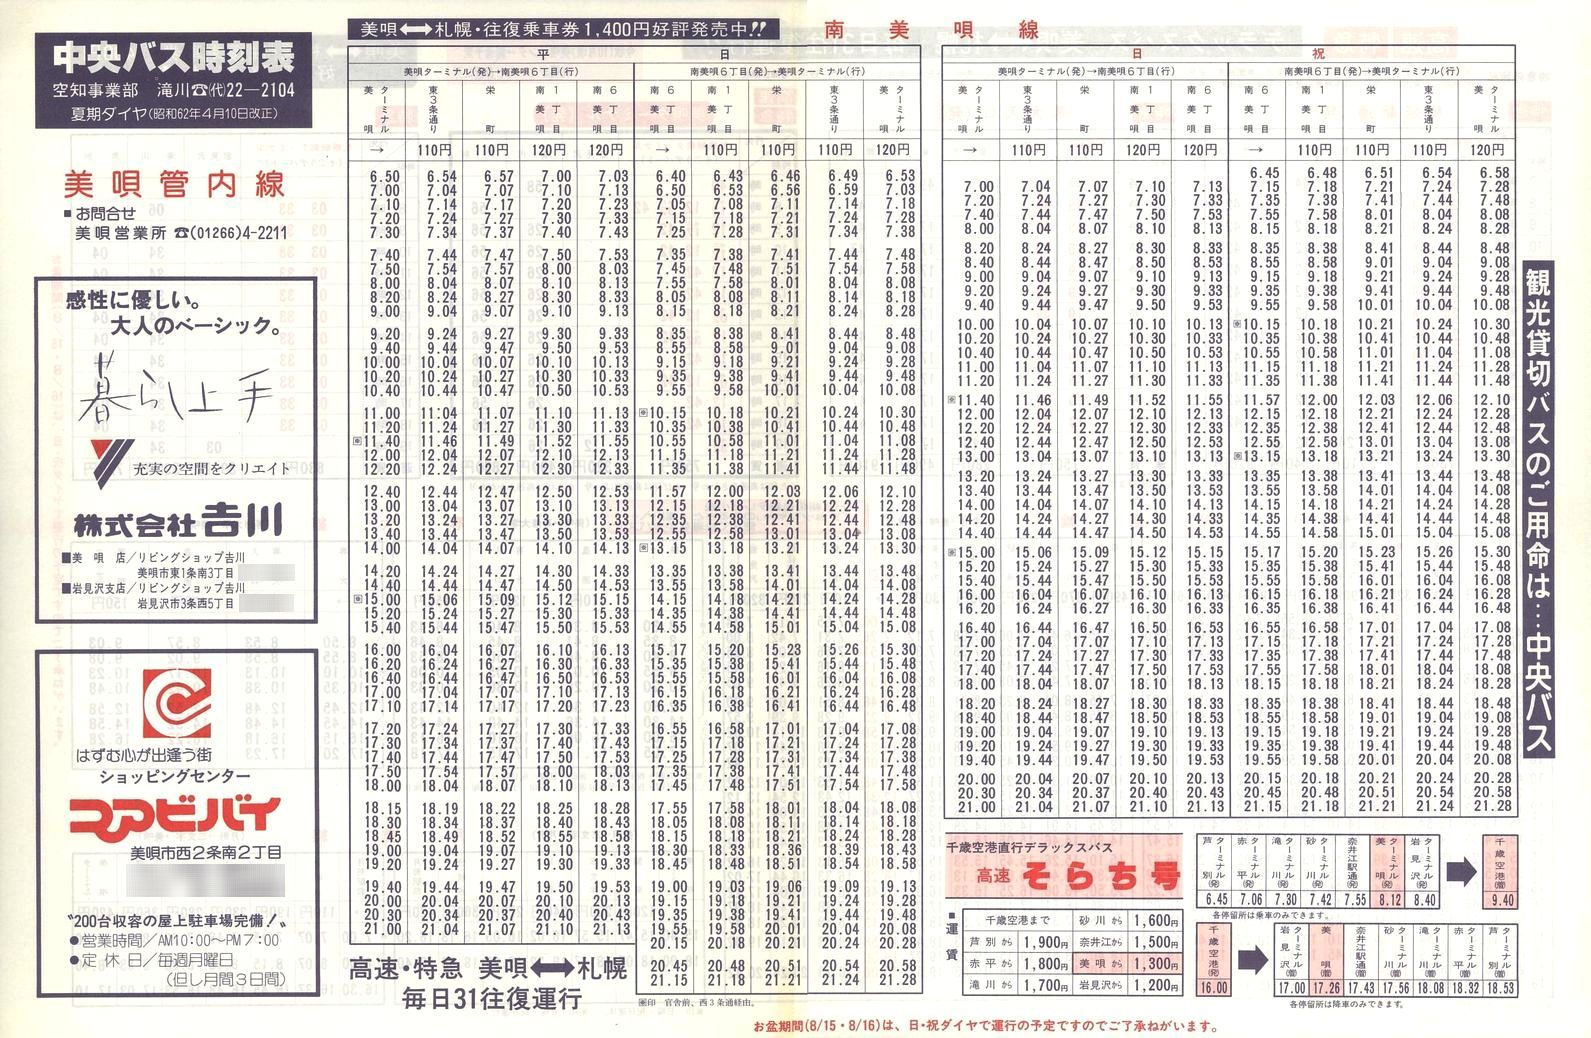 1987-04-10改正_北海道中央バス(空知)_美唄管内線時刻表表面